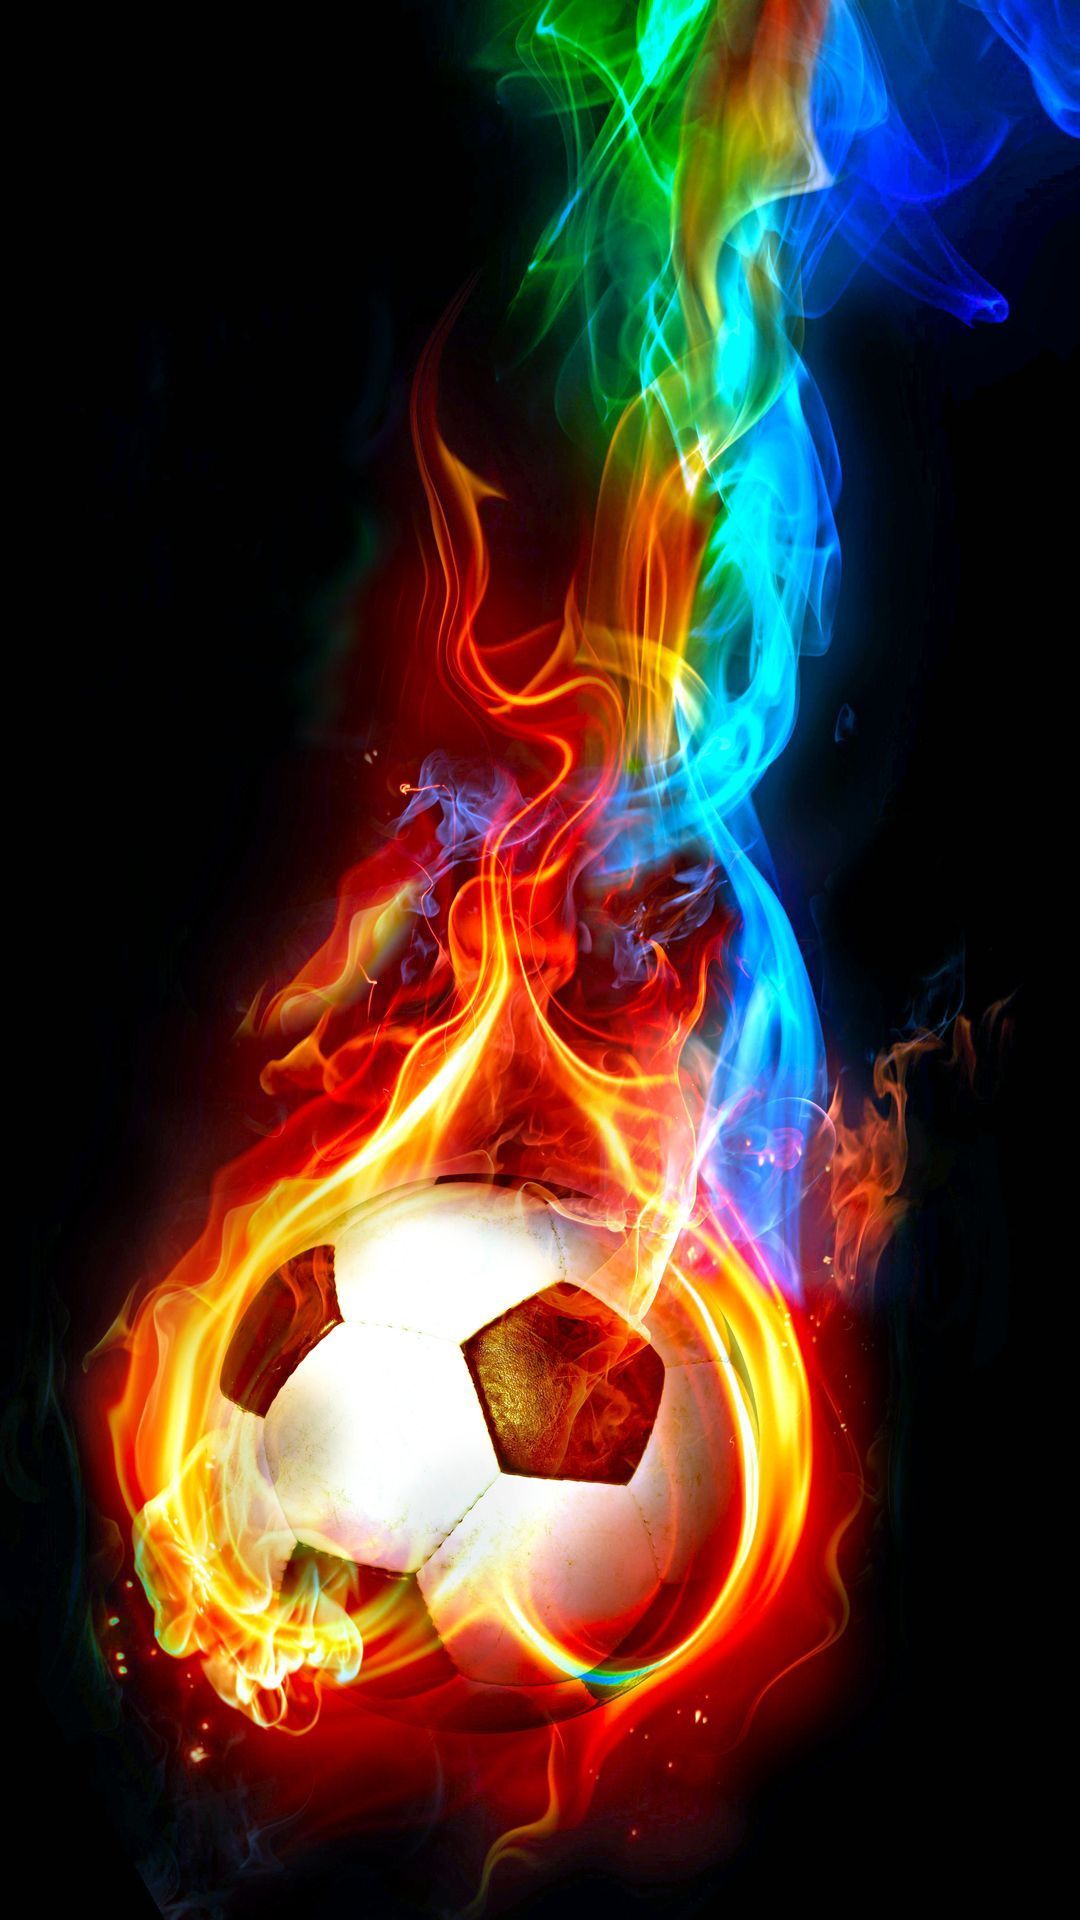 Soccer Ball On Fire Wallpaper on .wallpaper.dog